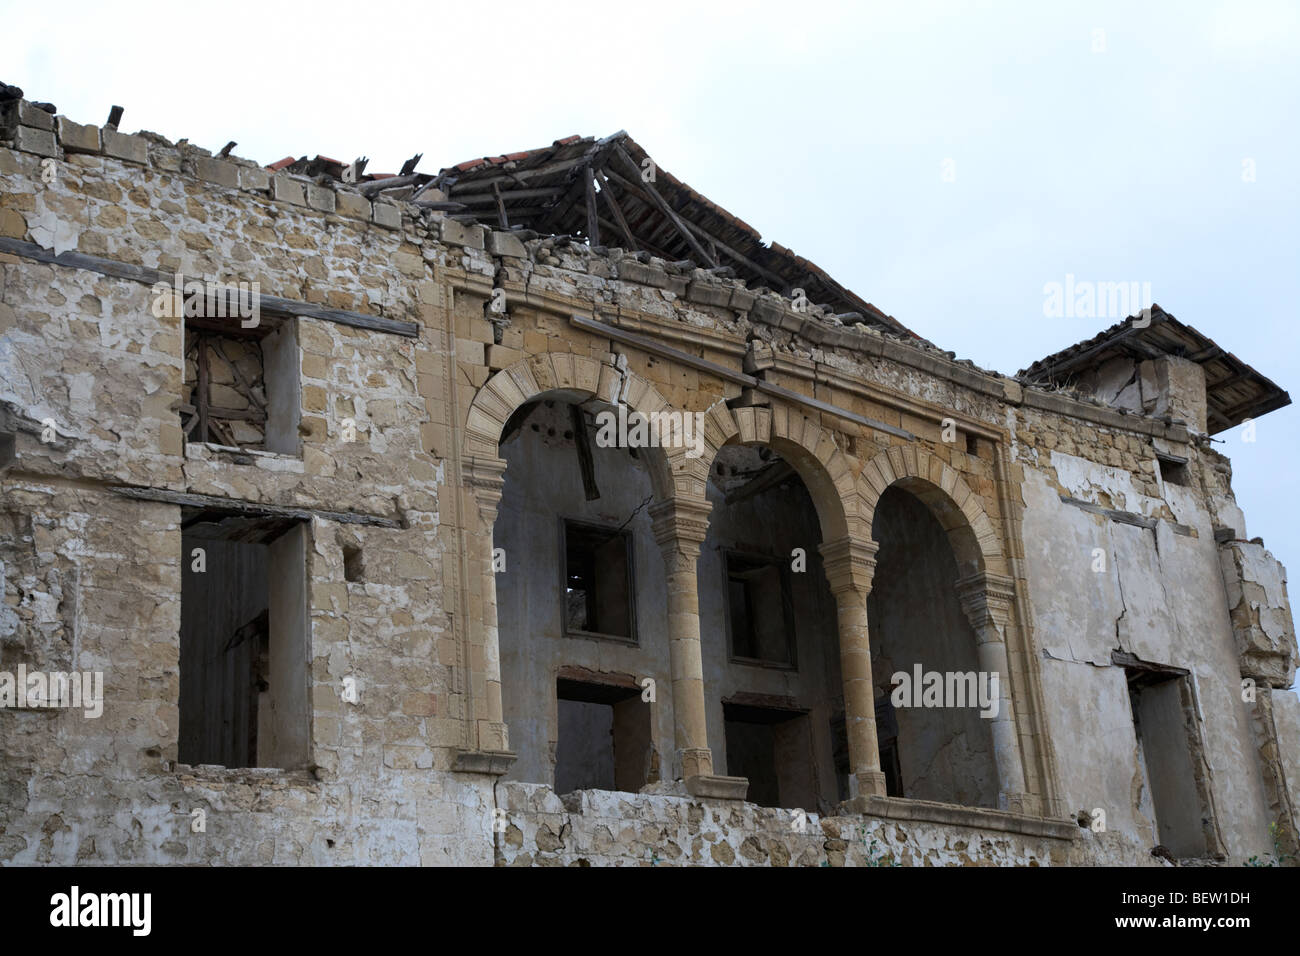 Ruines dans l'enceinte de l'Eglise arménienne et le monastère de Notre dame de la RTCN Nicosie République turque de Chypre du nord Banque D'Images